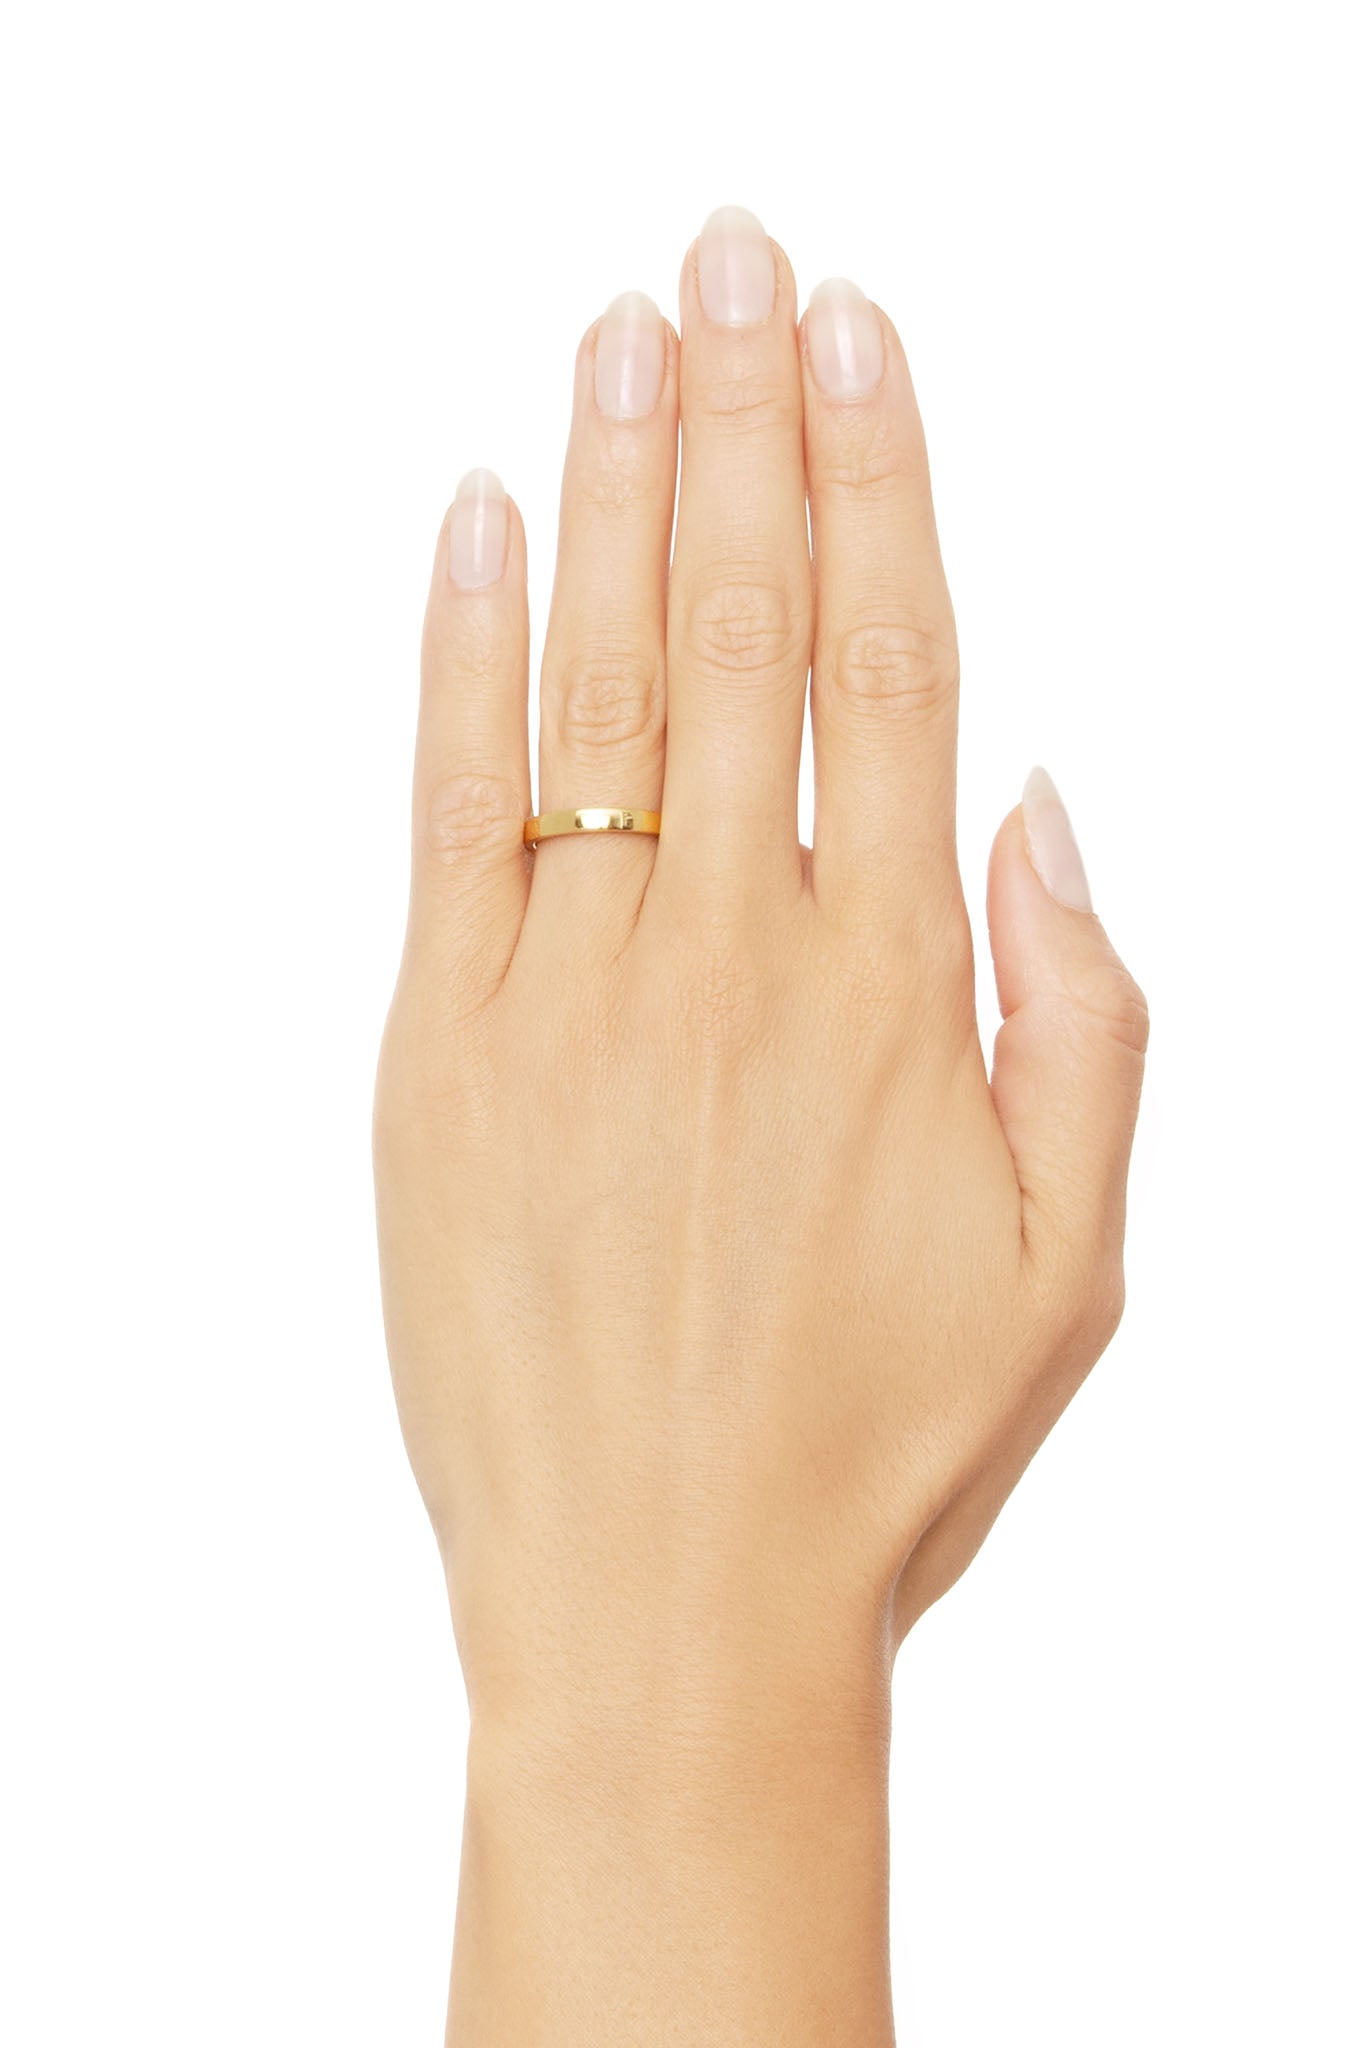 Efva Attling Half Round Thin Ring kultainen sormus